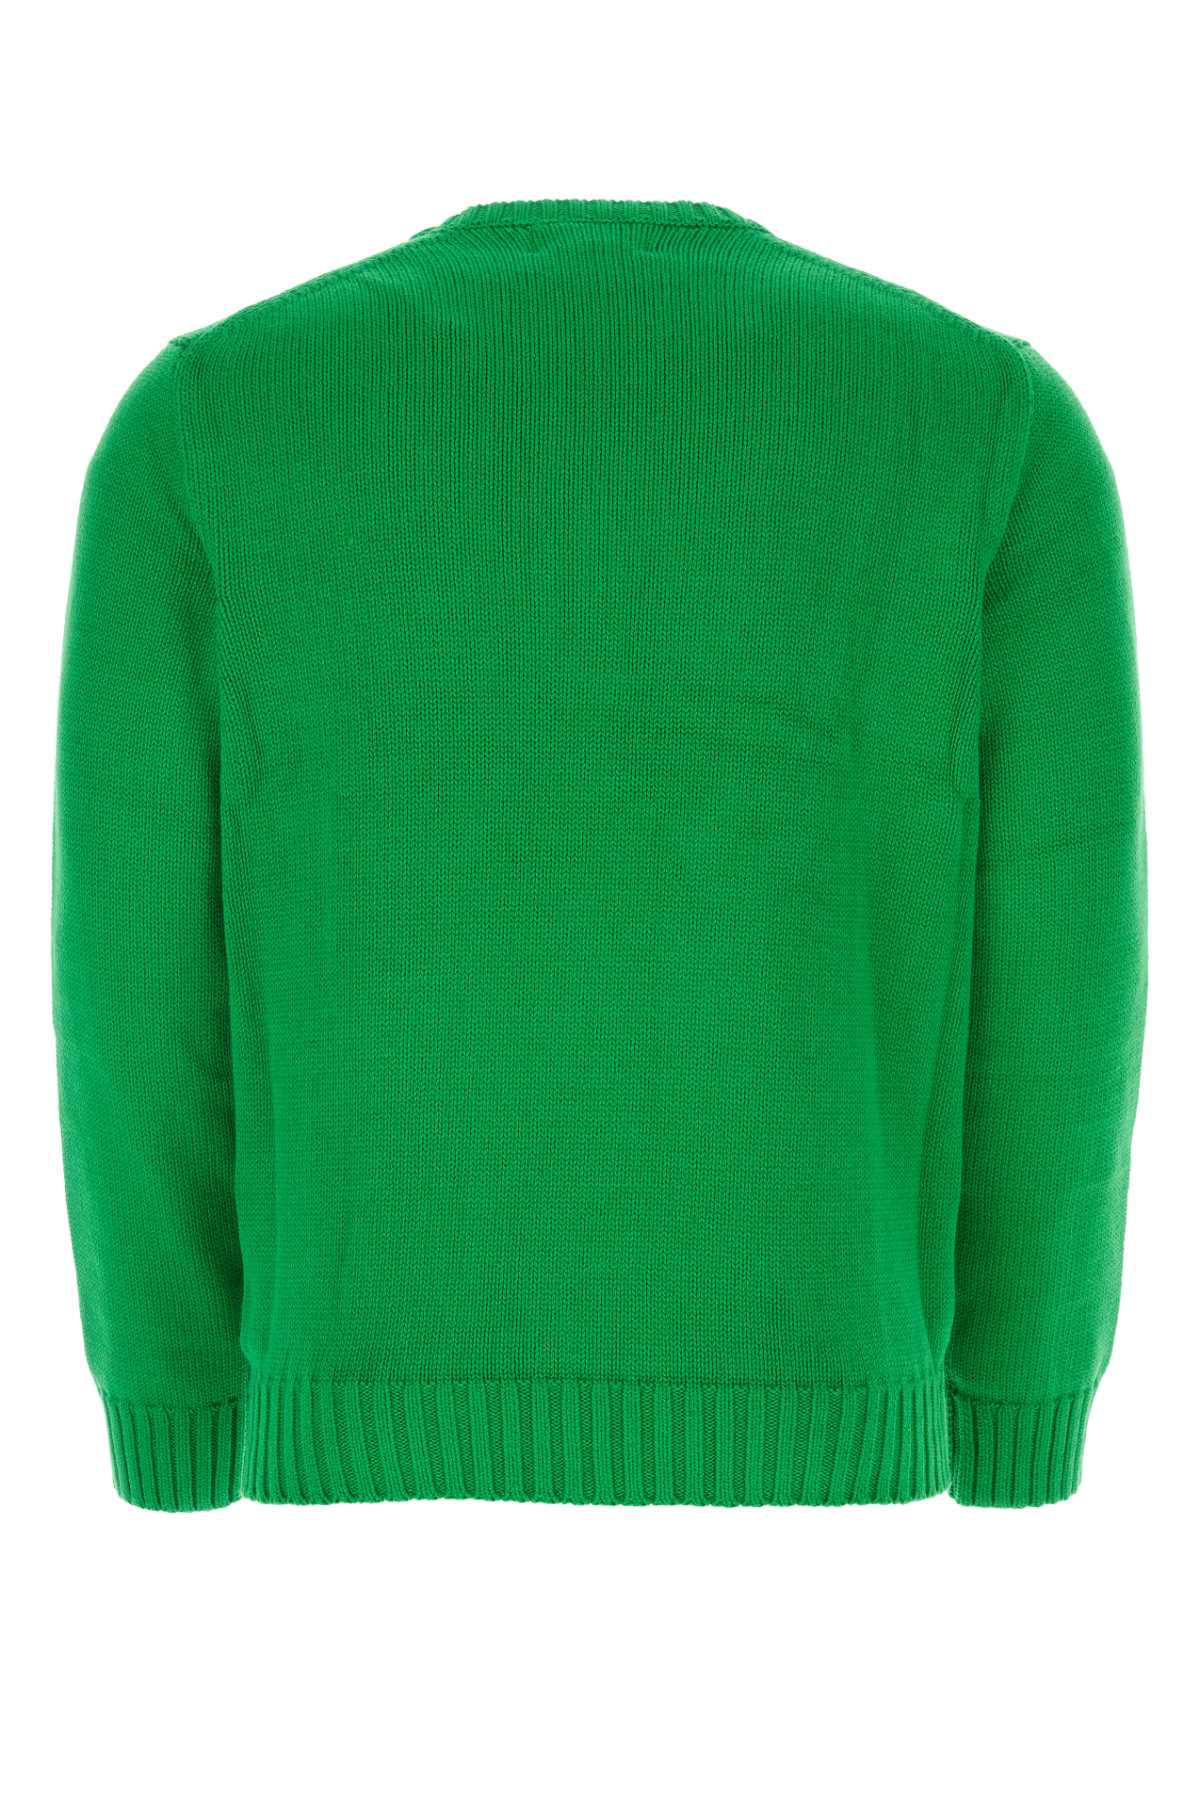 Polo Ralph Lauren Green Cotton Sweater